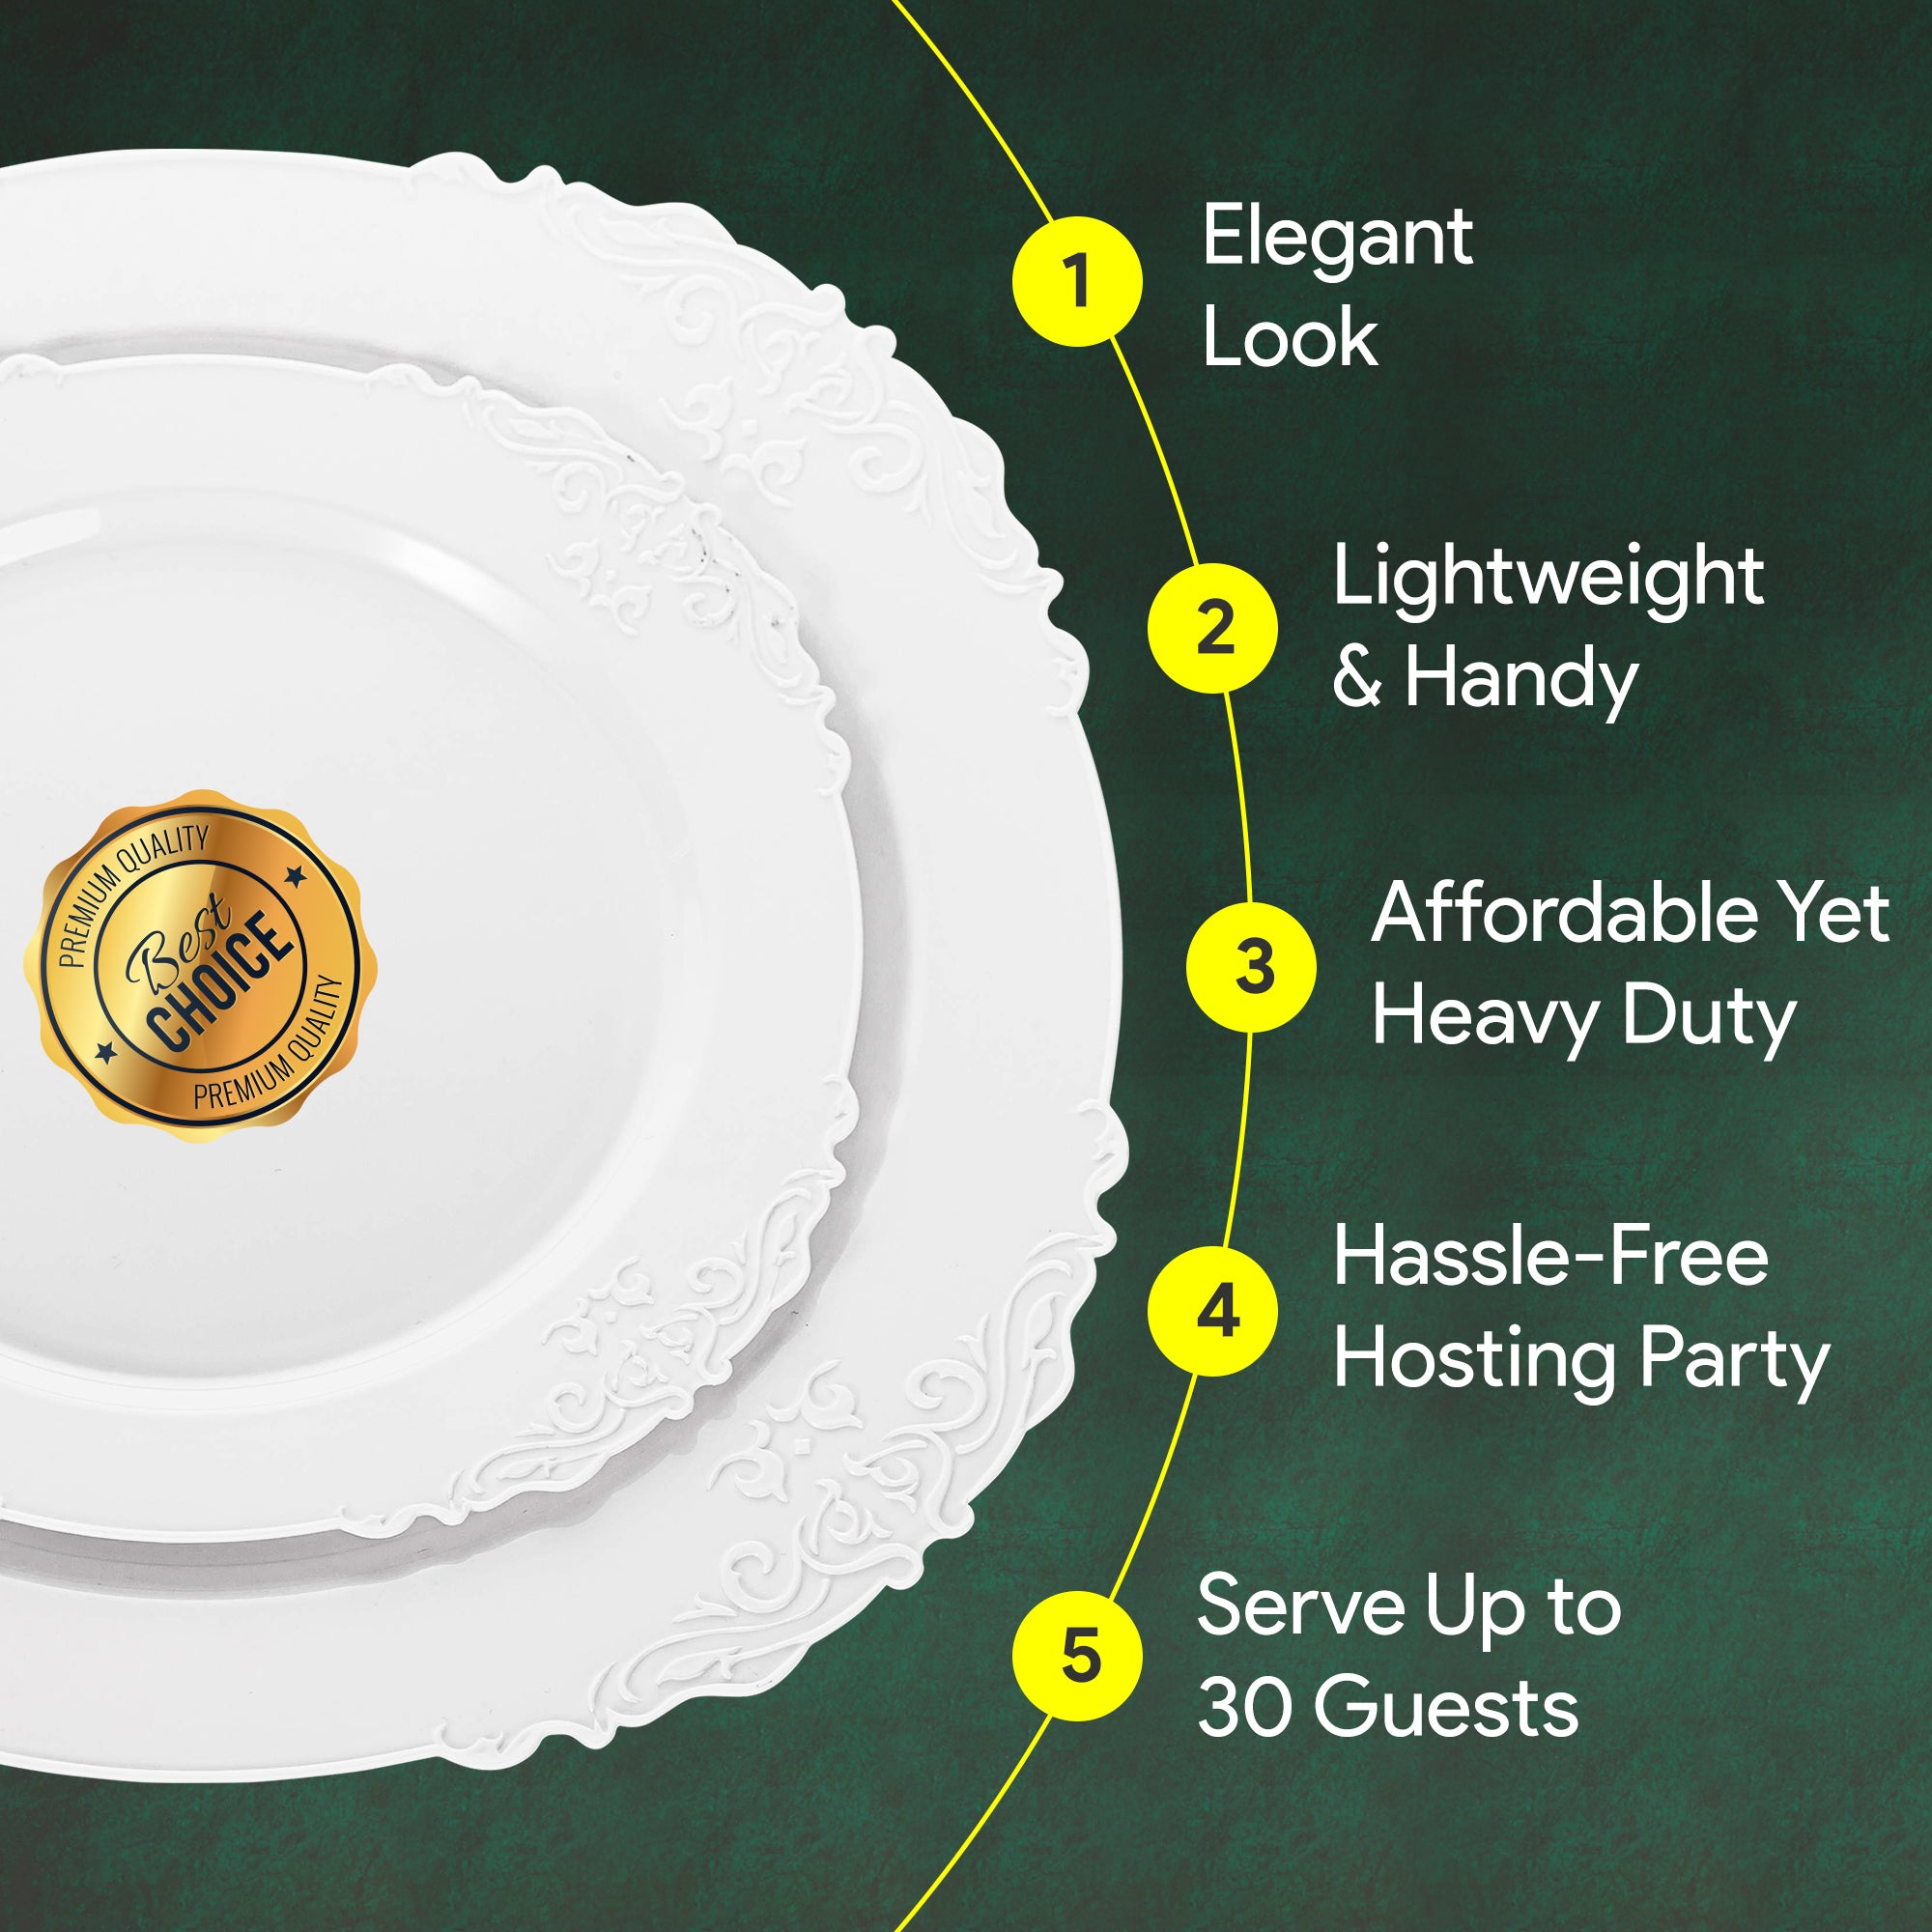 Elegant & Classy Disposable plates for parties, 30pcs 10.25" & 30pcs 7" set